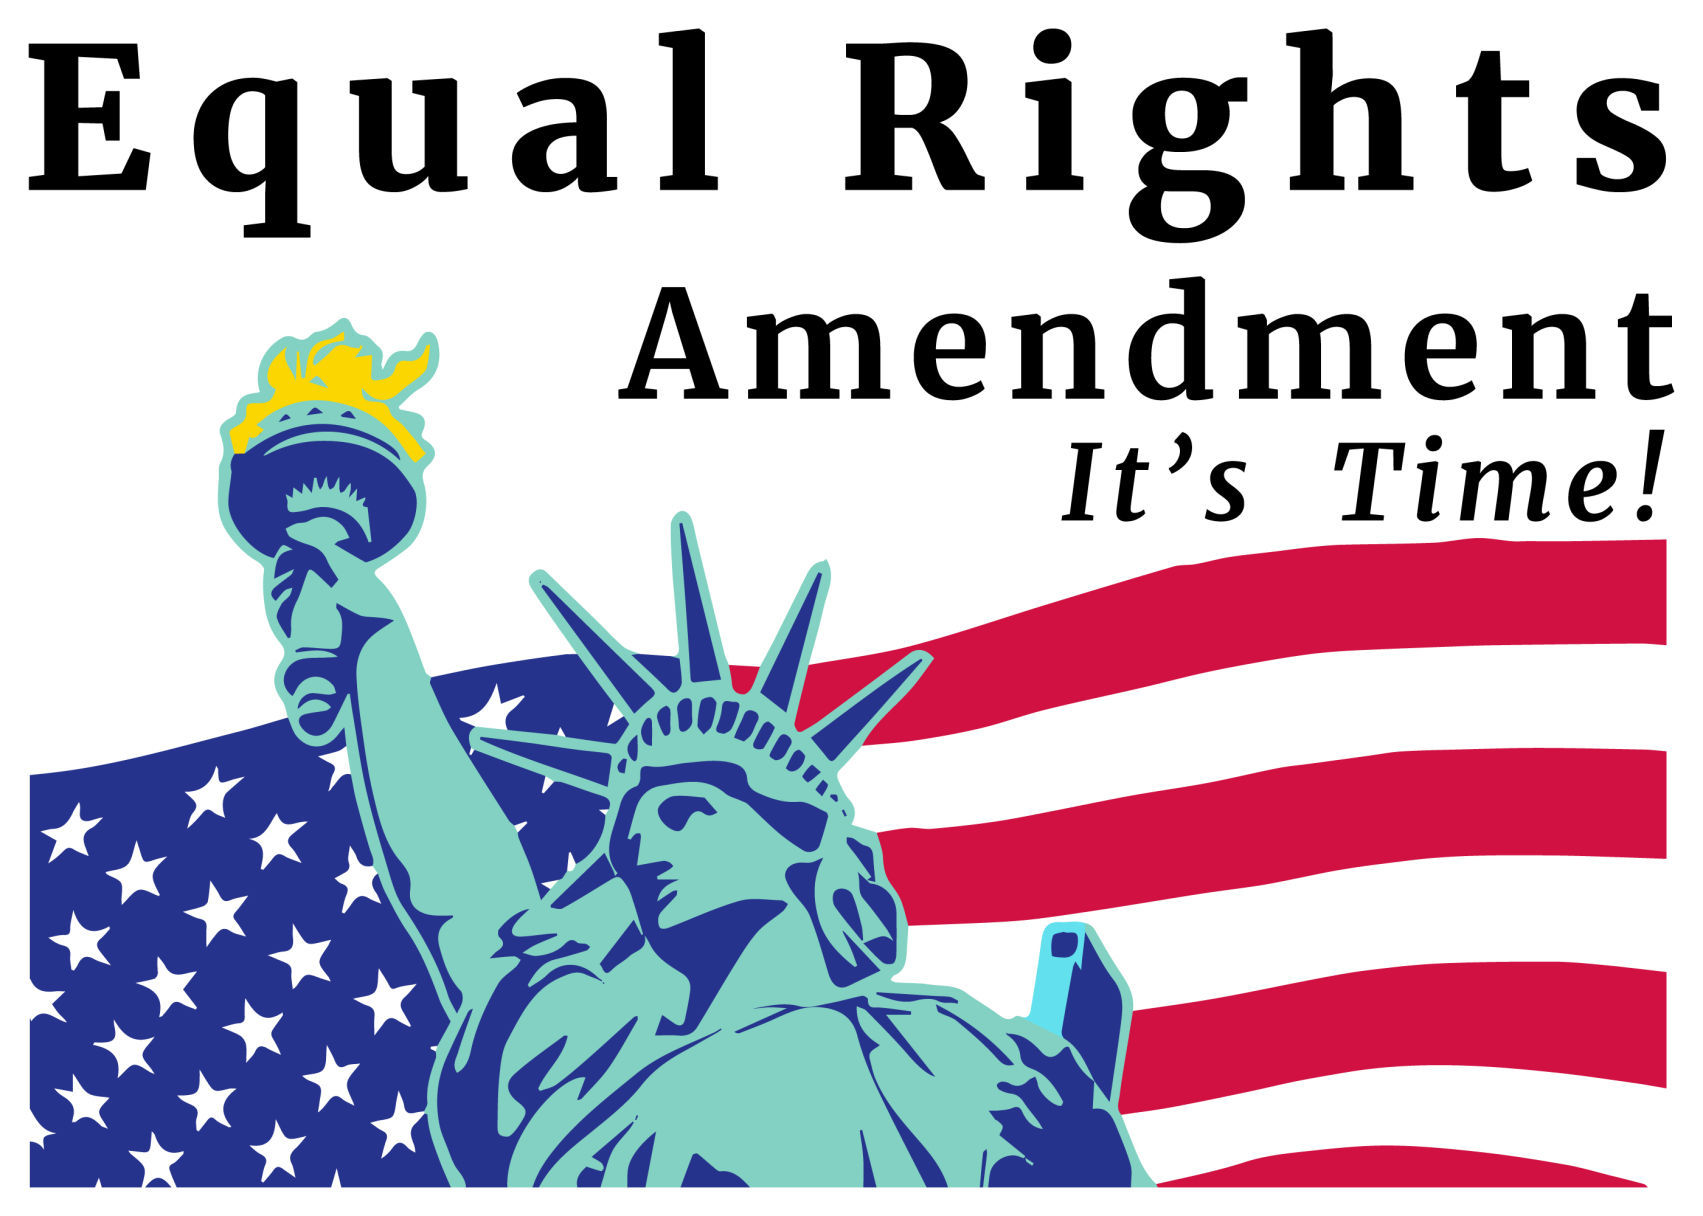 equal rights amendment